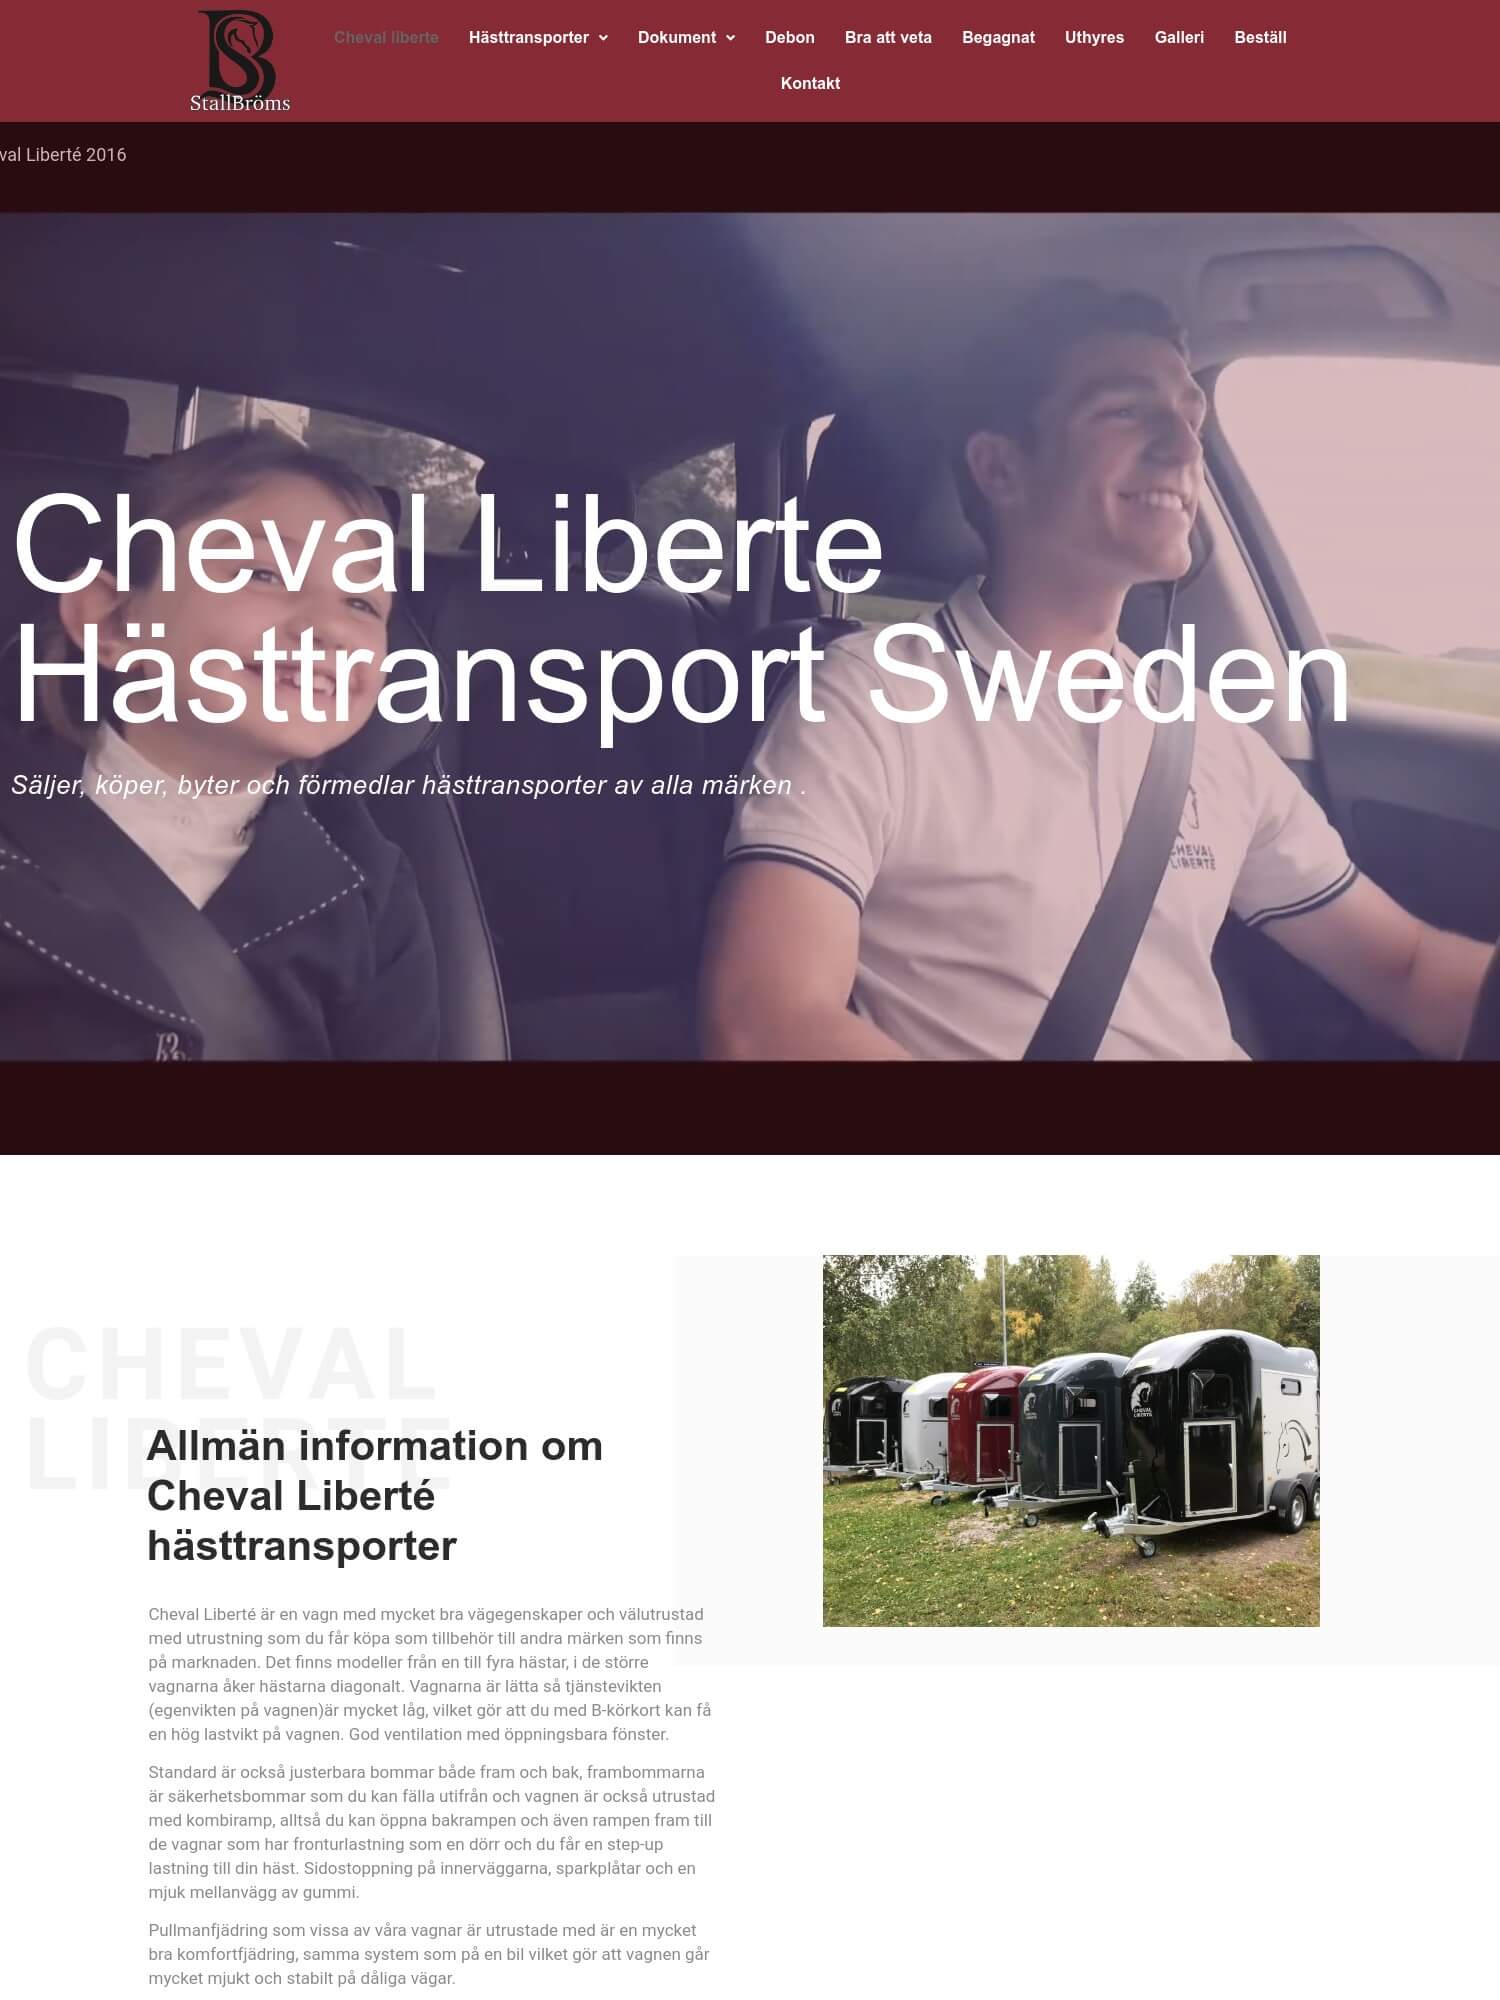 Stallbroms – Cheval Liberte hasttransport 1 Interwebsite Webbyrå